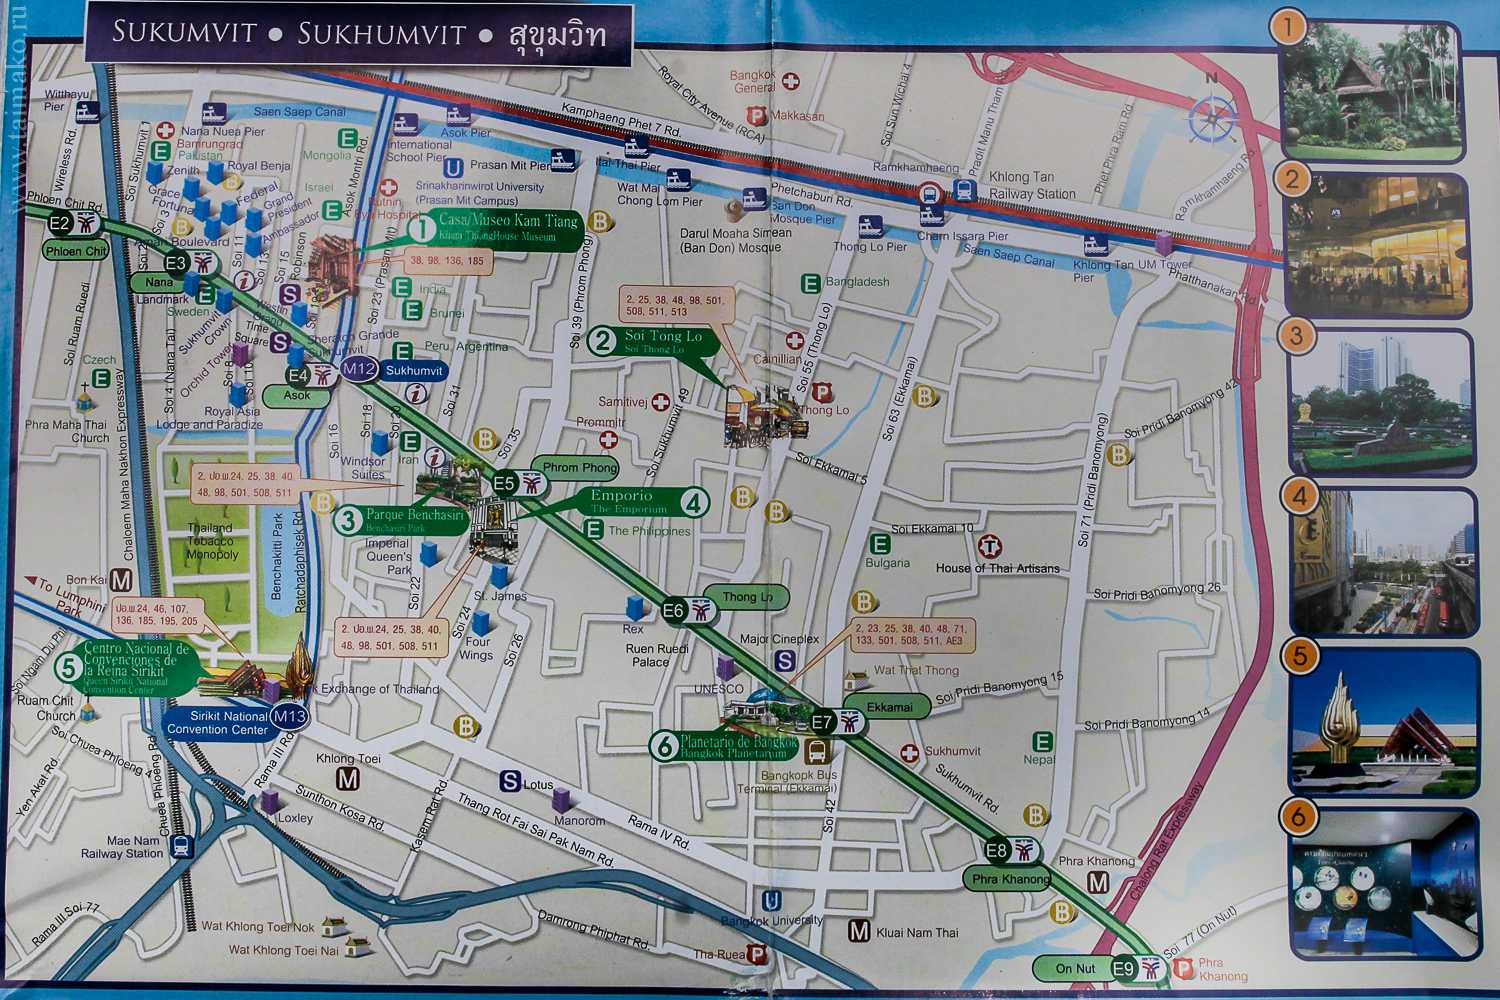 Метро бангкока – bts, скоростной наземный транспорт: схема на русском языке и карта достопримечательностей | thailife.tv